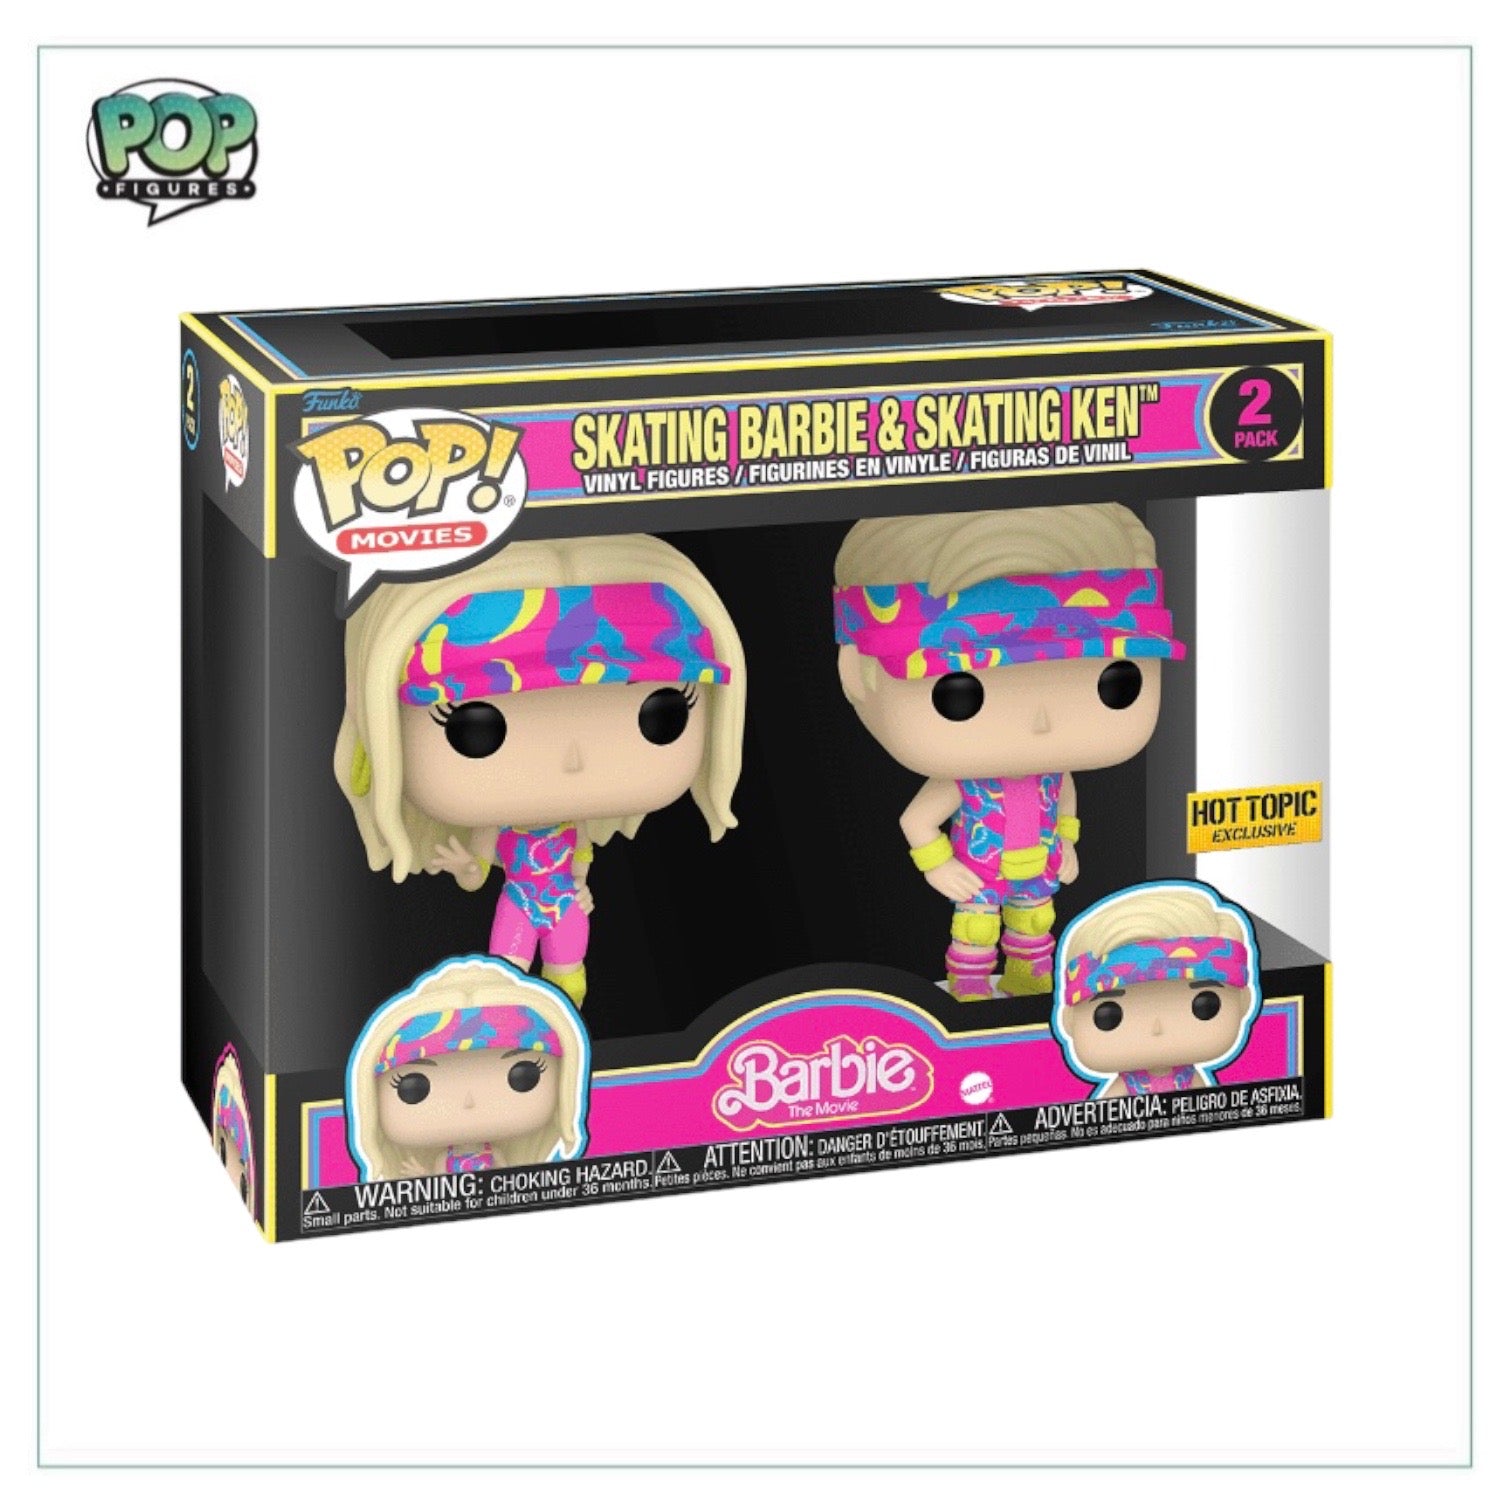 Skating Barbie & Skating Ken 2 Pack Funko Pop! - Barbie The Movie - Hot Topic Exclusive